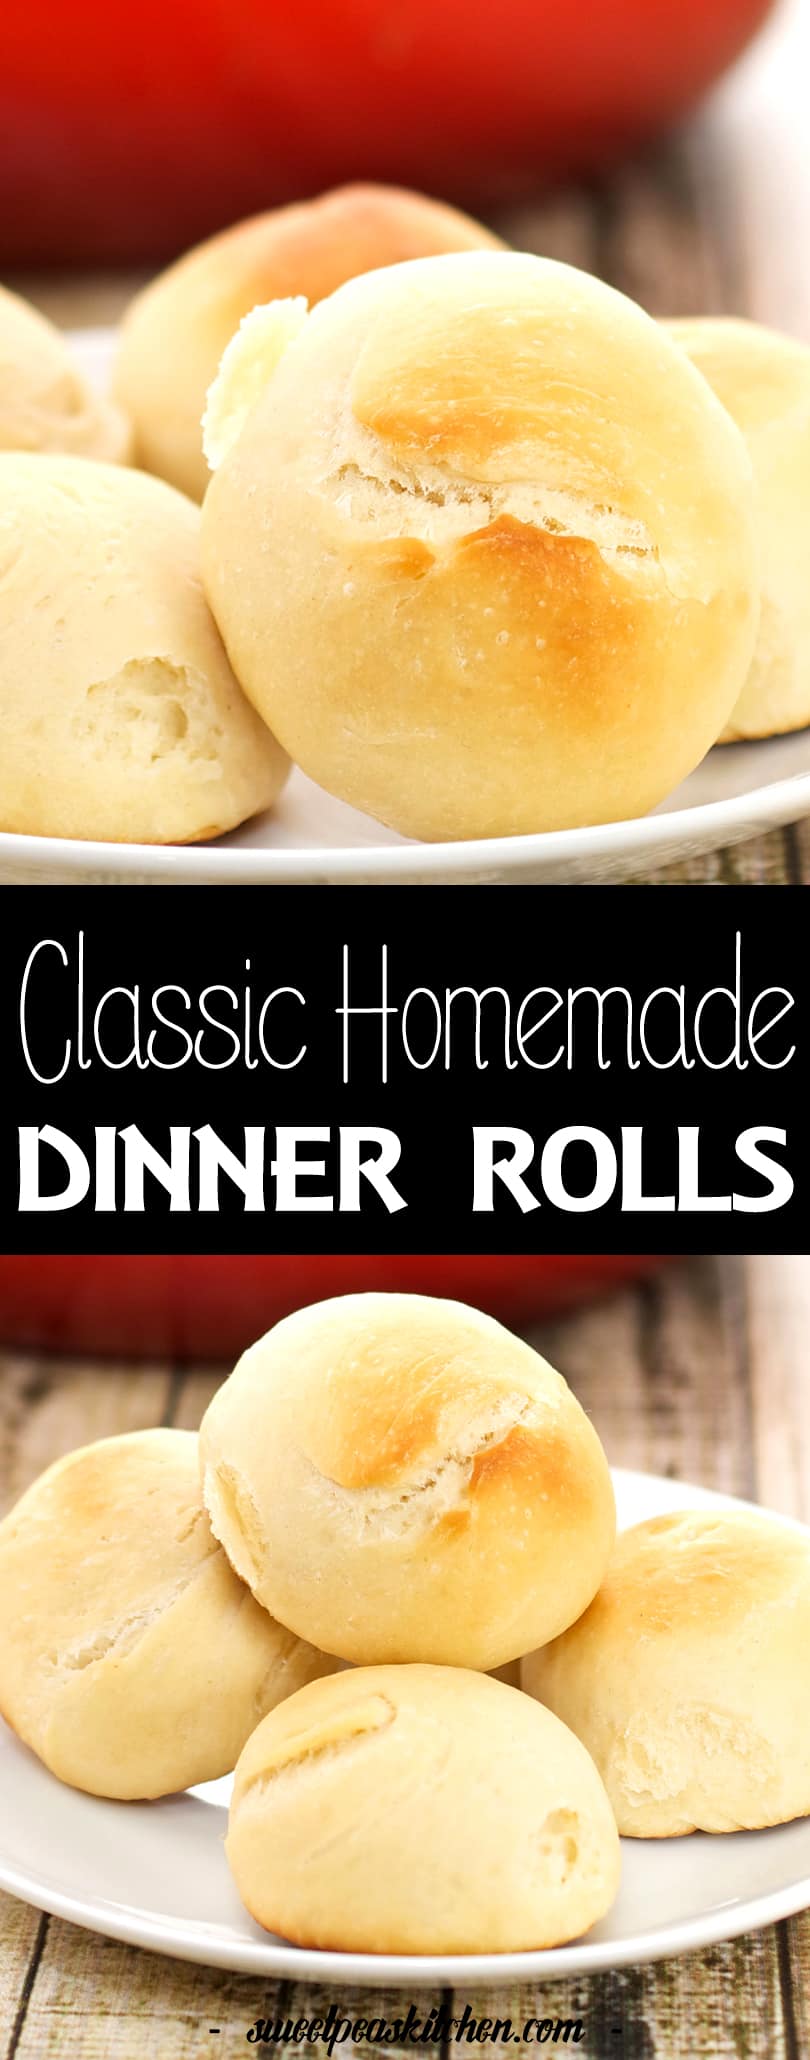 Classic Homemade Dinner Rolls